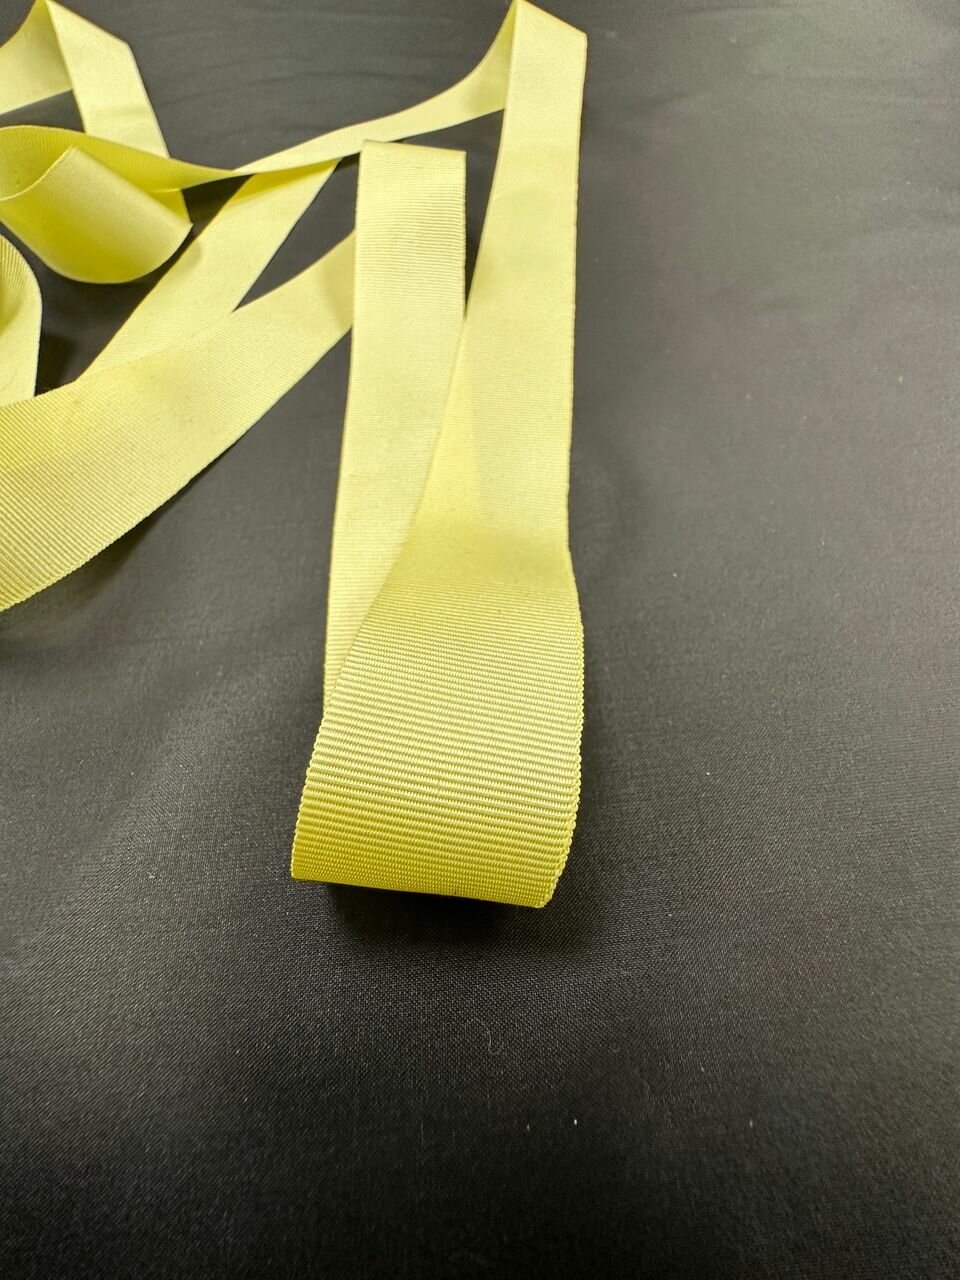 Репсовая лента (тесьма) , ширина 2,5 см, цвет желтый, намотка 10 метров. Пр-во Италия.